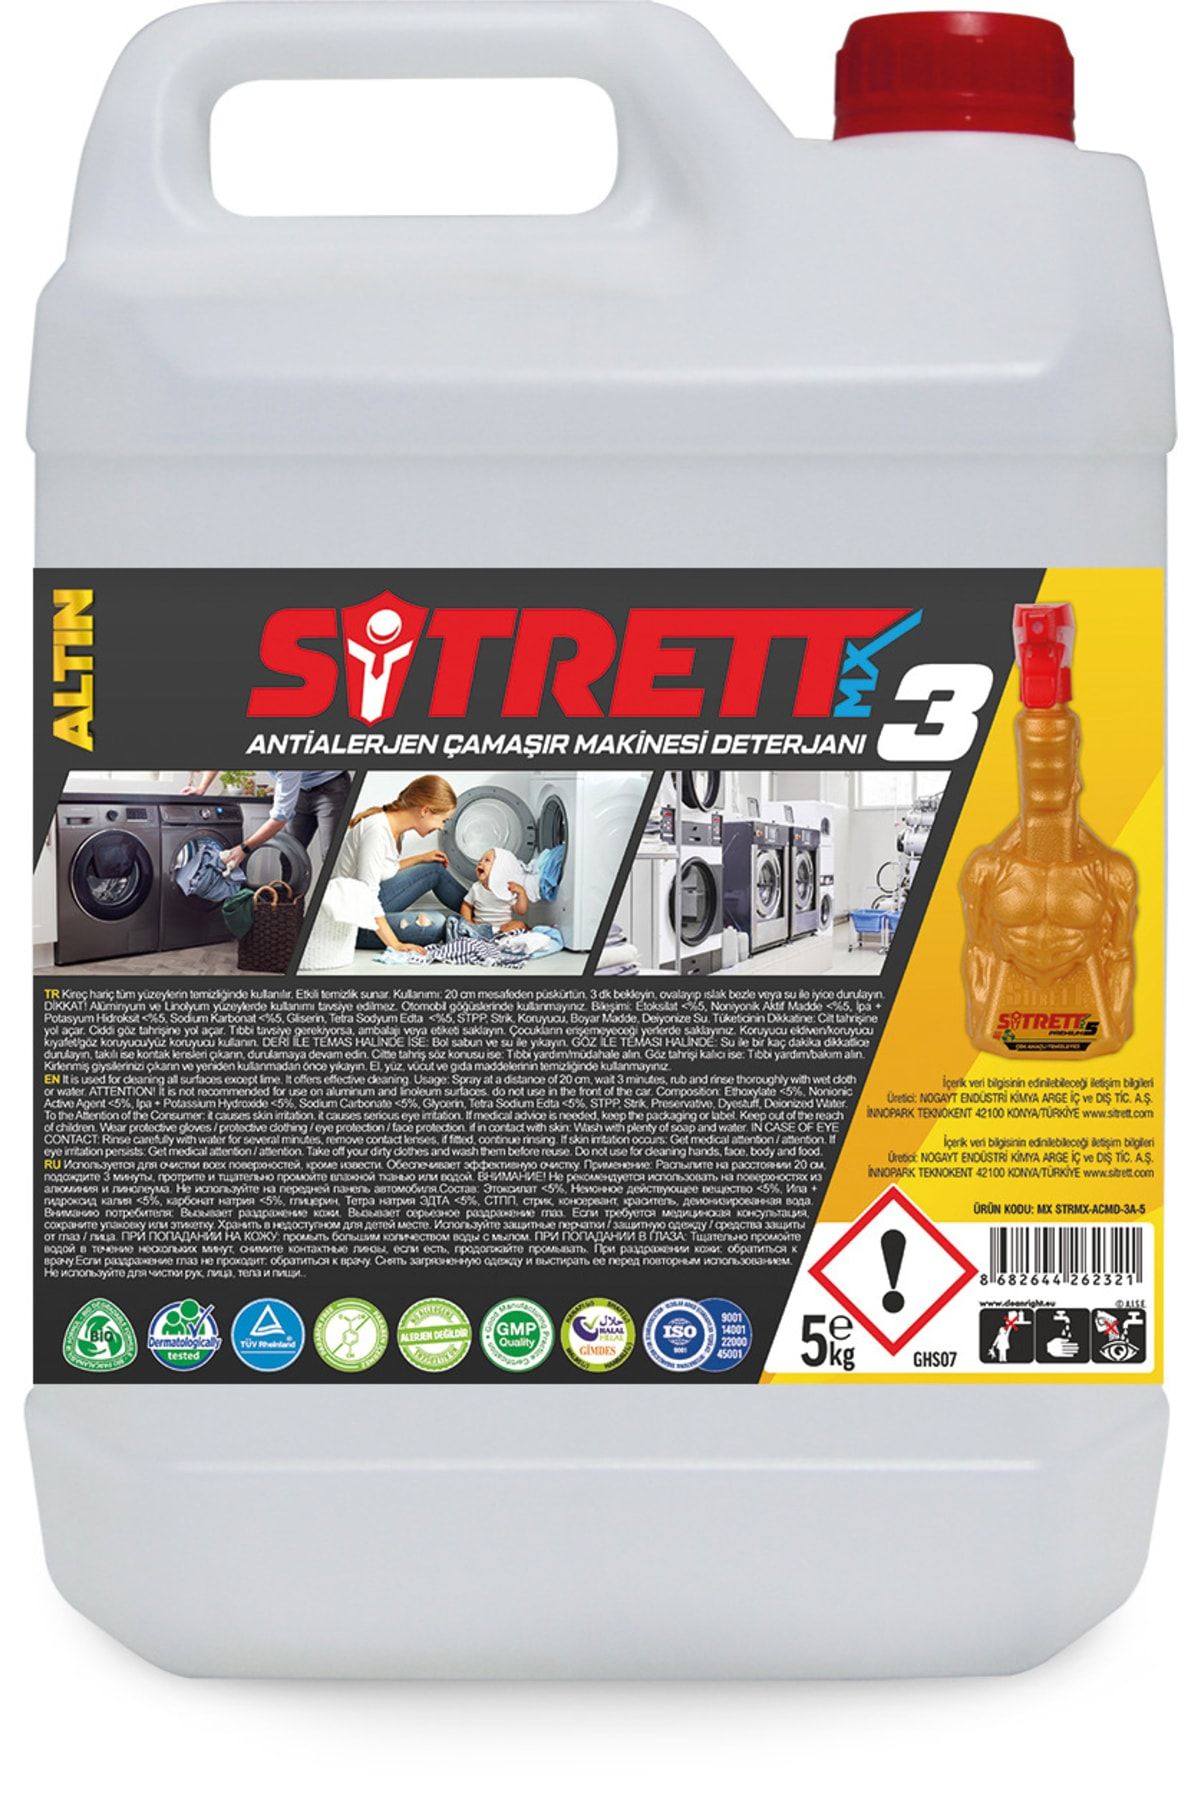 SİTRETT MX Strmx-acmd-3a-5 Antialerjen Çamaşır Makinesi Deterjanı (5 Kg)